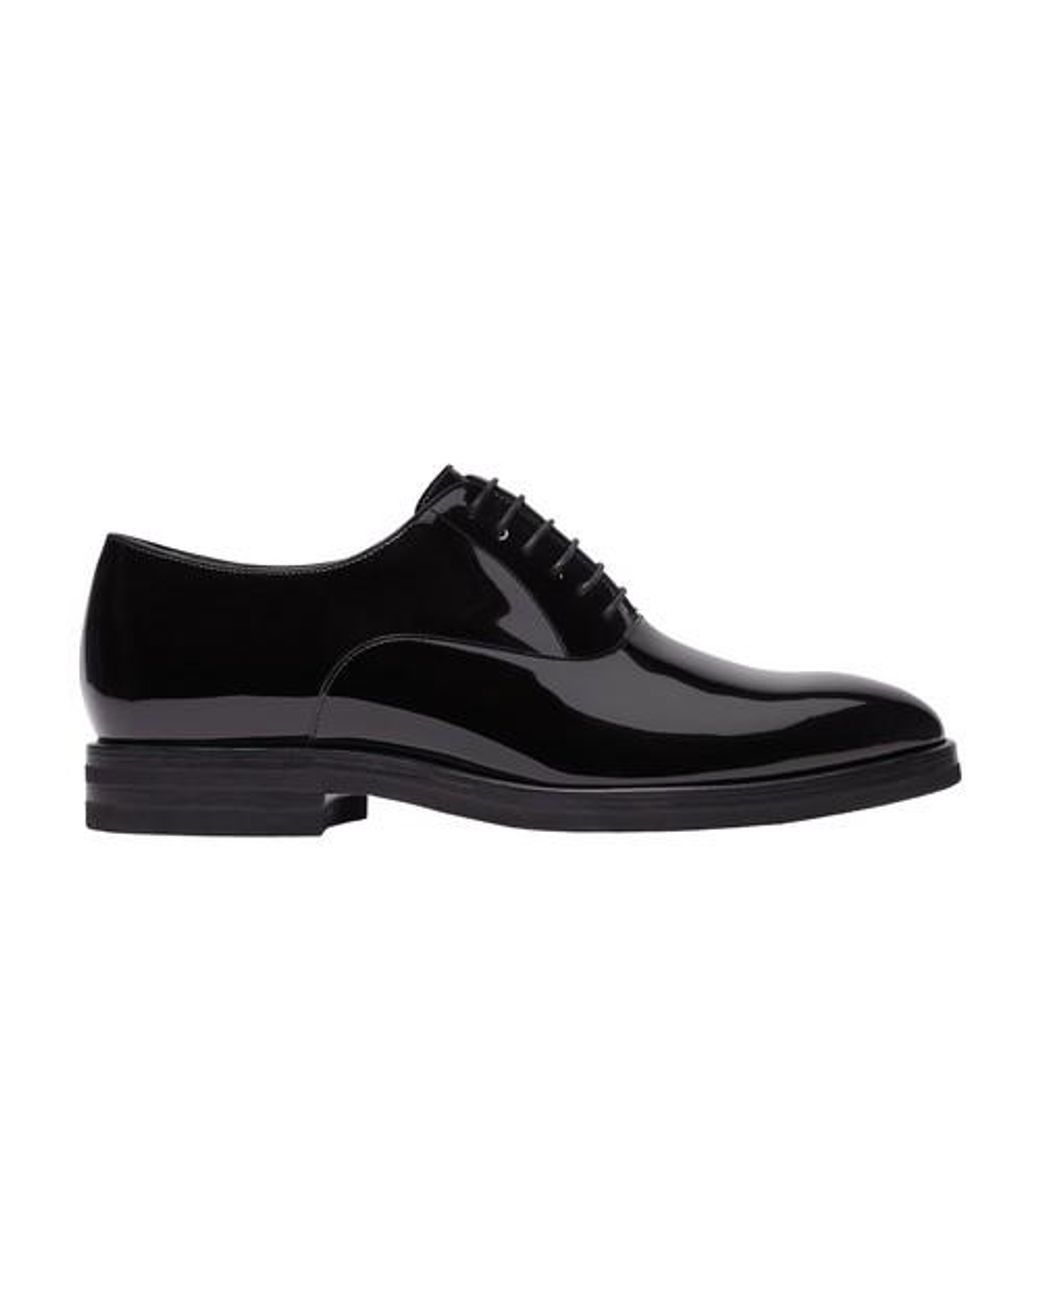 Brunello Cucinelli Klassische Oxford-Schuhe in Braun für Herren Herren Schuhe Schnürschuhe Oxford Schuhe 